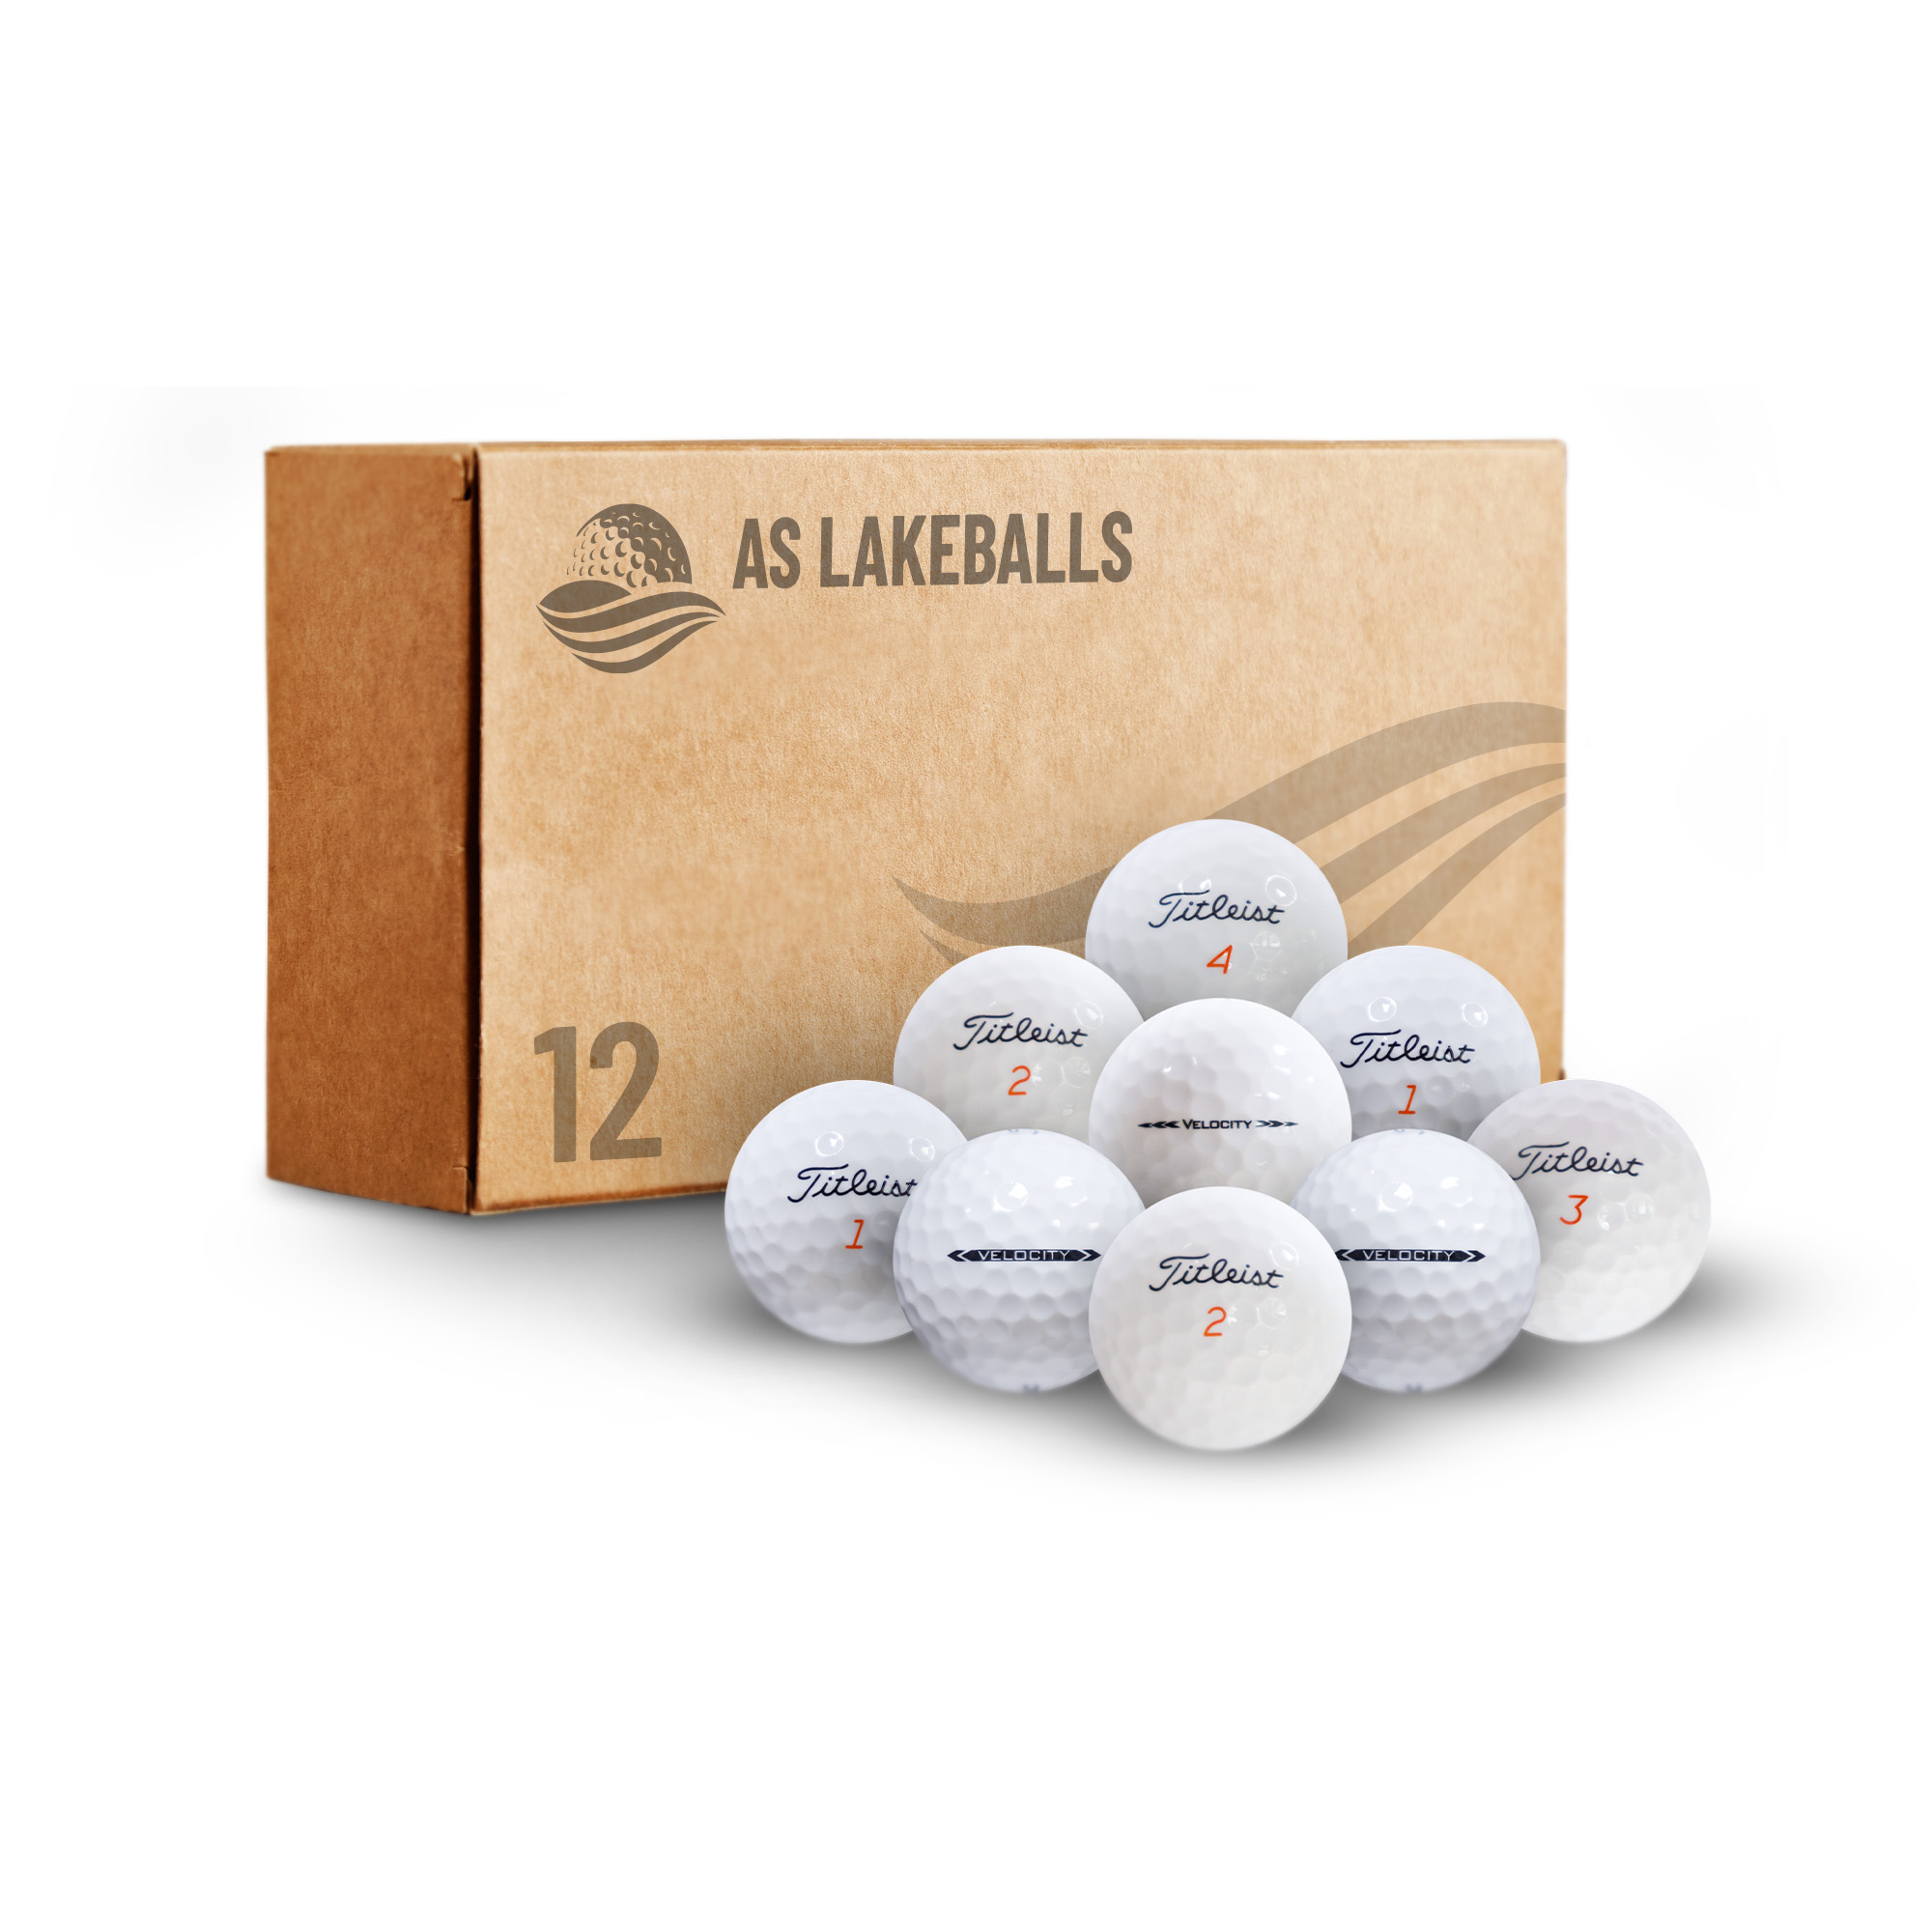 12 Stück Titleist Velocity AA-AAA Lakeballs bei AS Lakeballs günstig kaufen